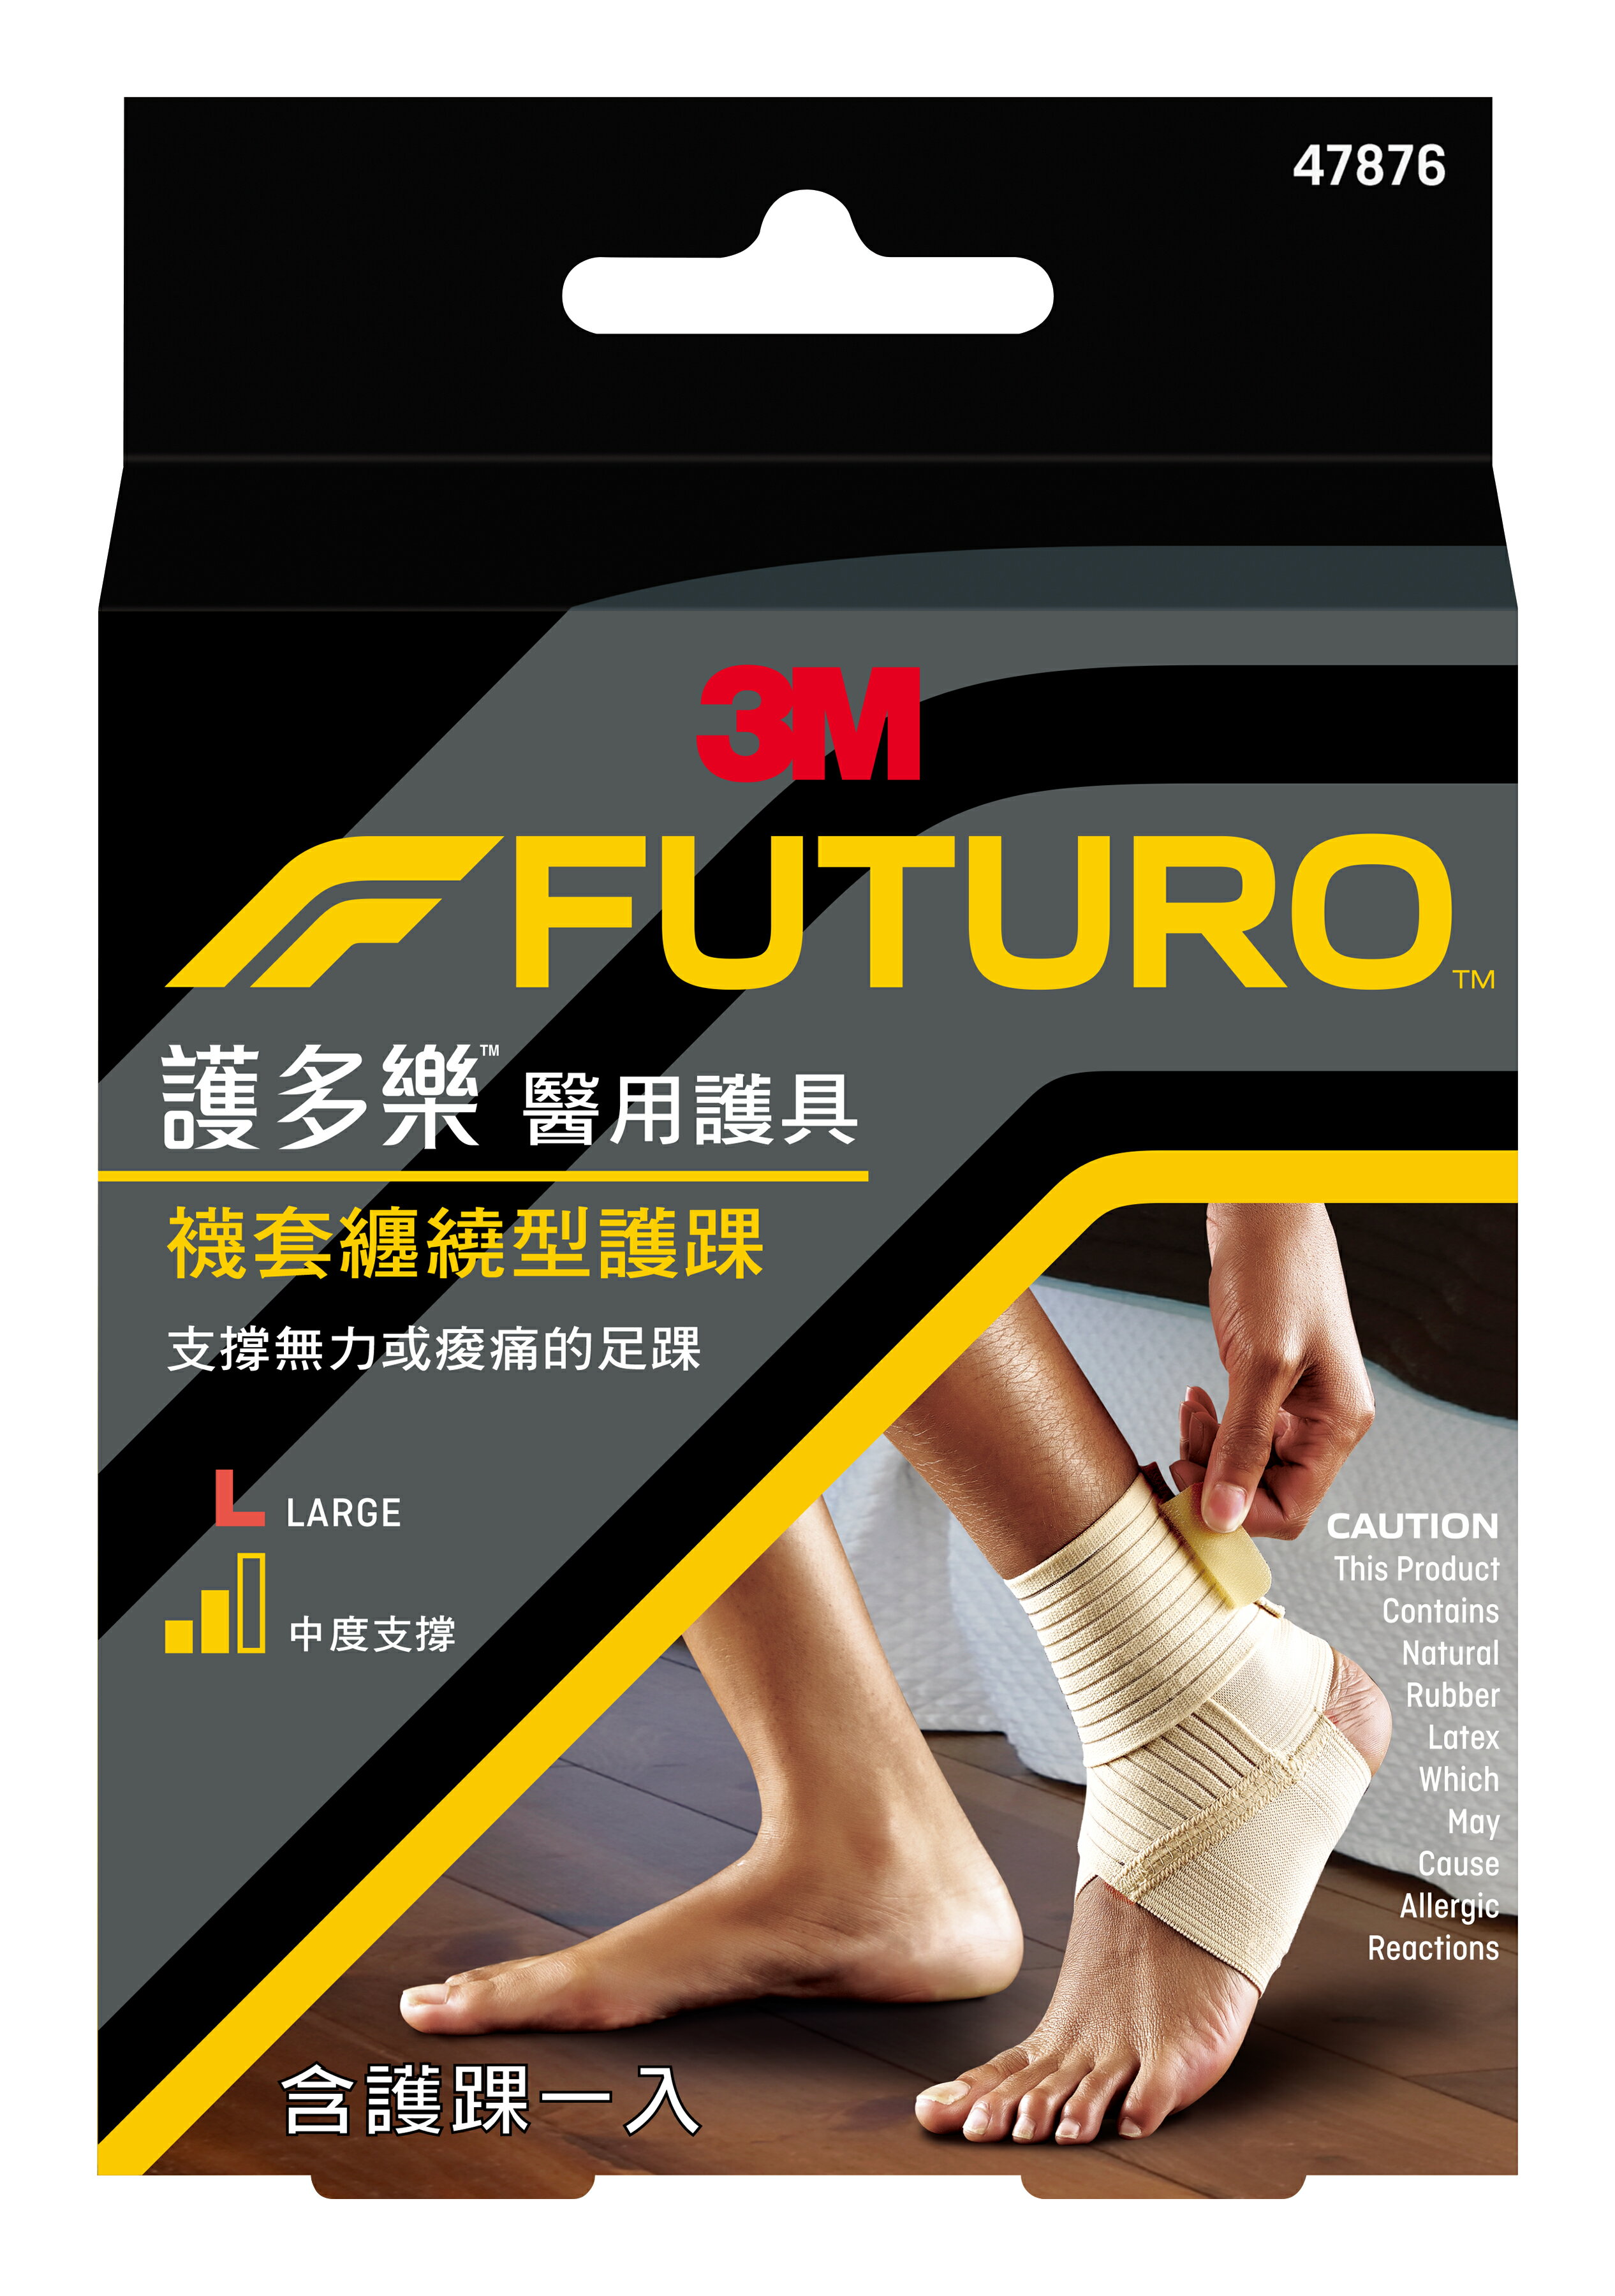 【醫護寶】3M-FUTURO 護多樂 襪套纏繞型護踝